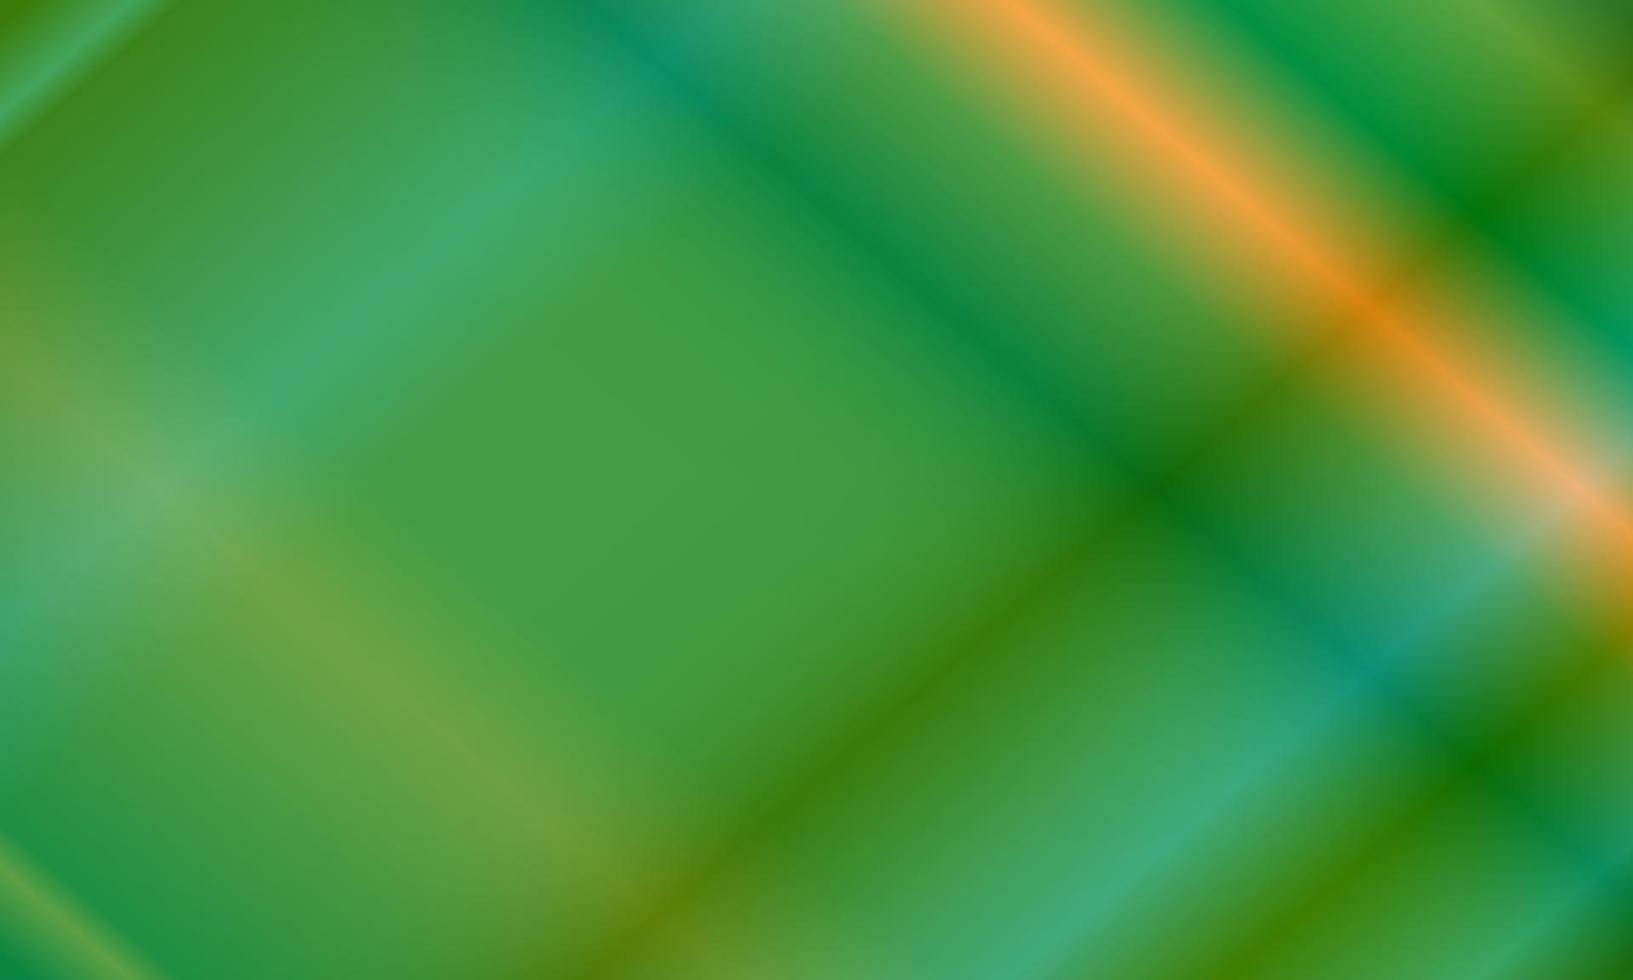 fundo abstrato verde escuro e dourado com padrão de luz neon. estilo brilhante, gradiente, borrão, moderno e colorido. ótimo para plano de fundo, pano de fundo, papel de parede, capa, pôster, banner ou panfleto vetor